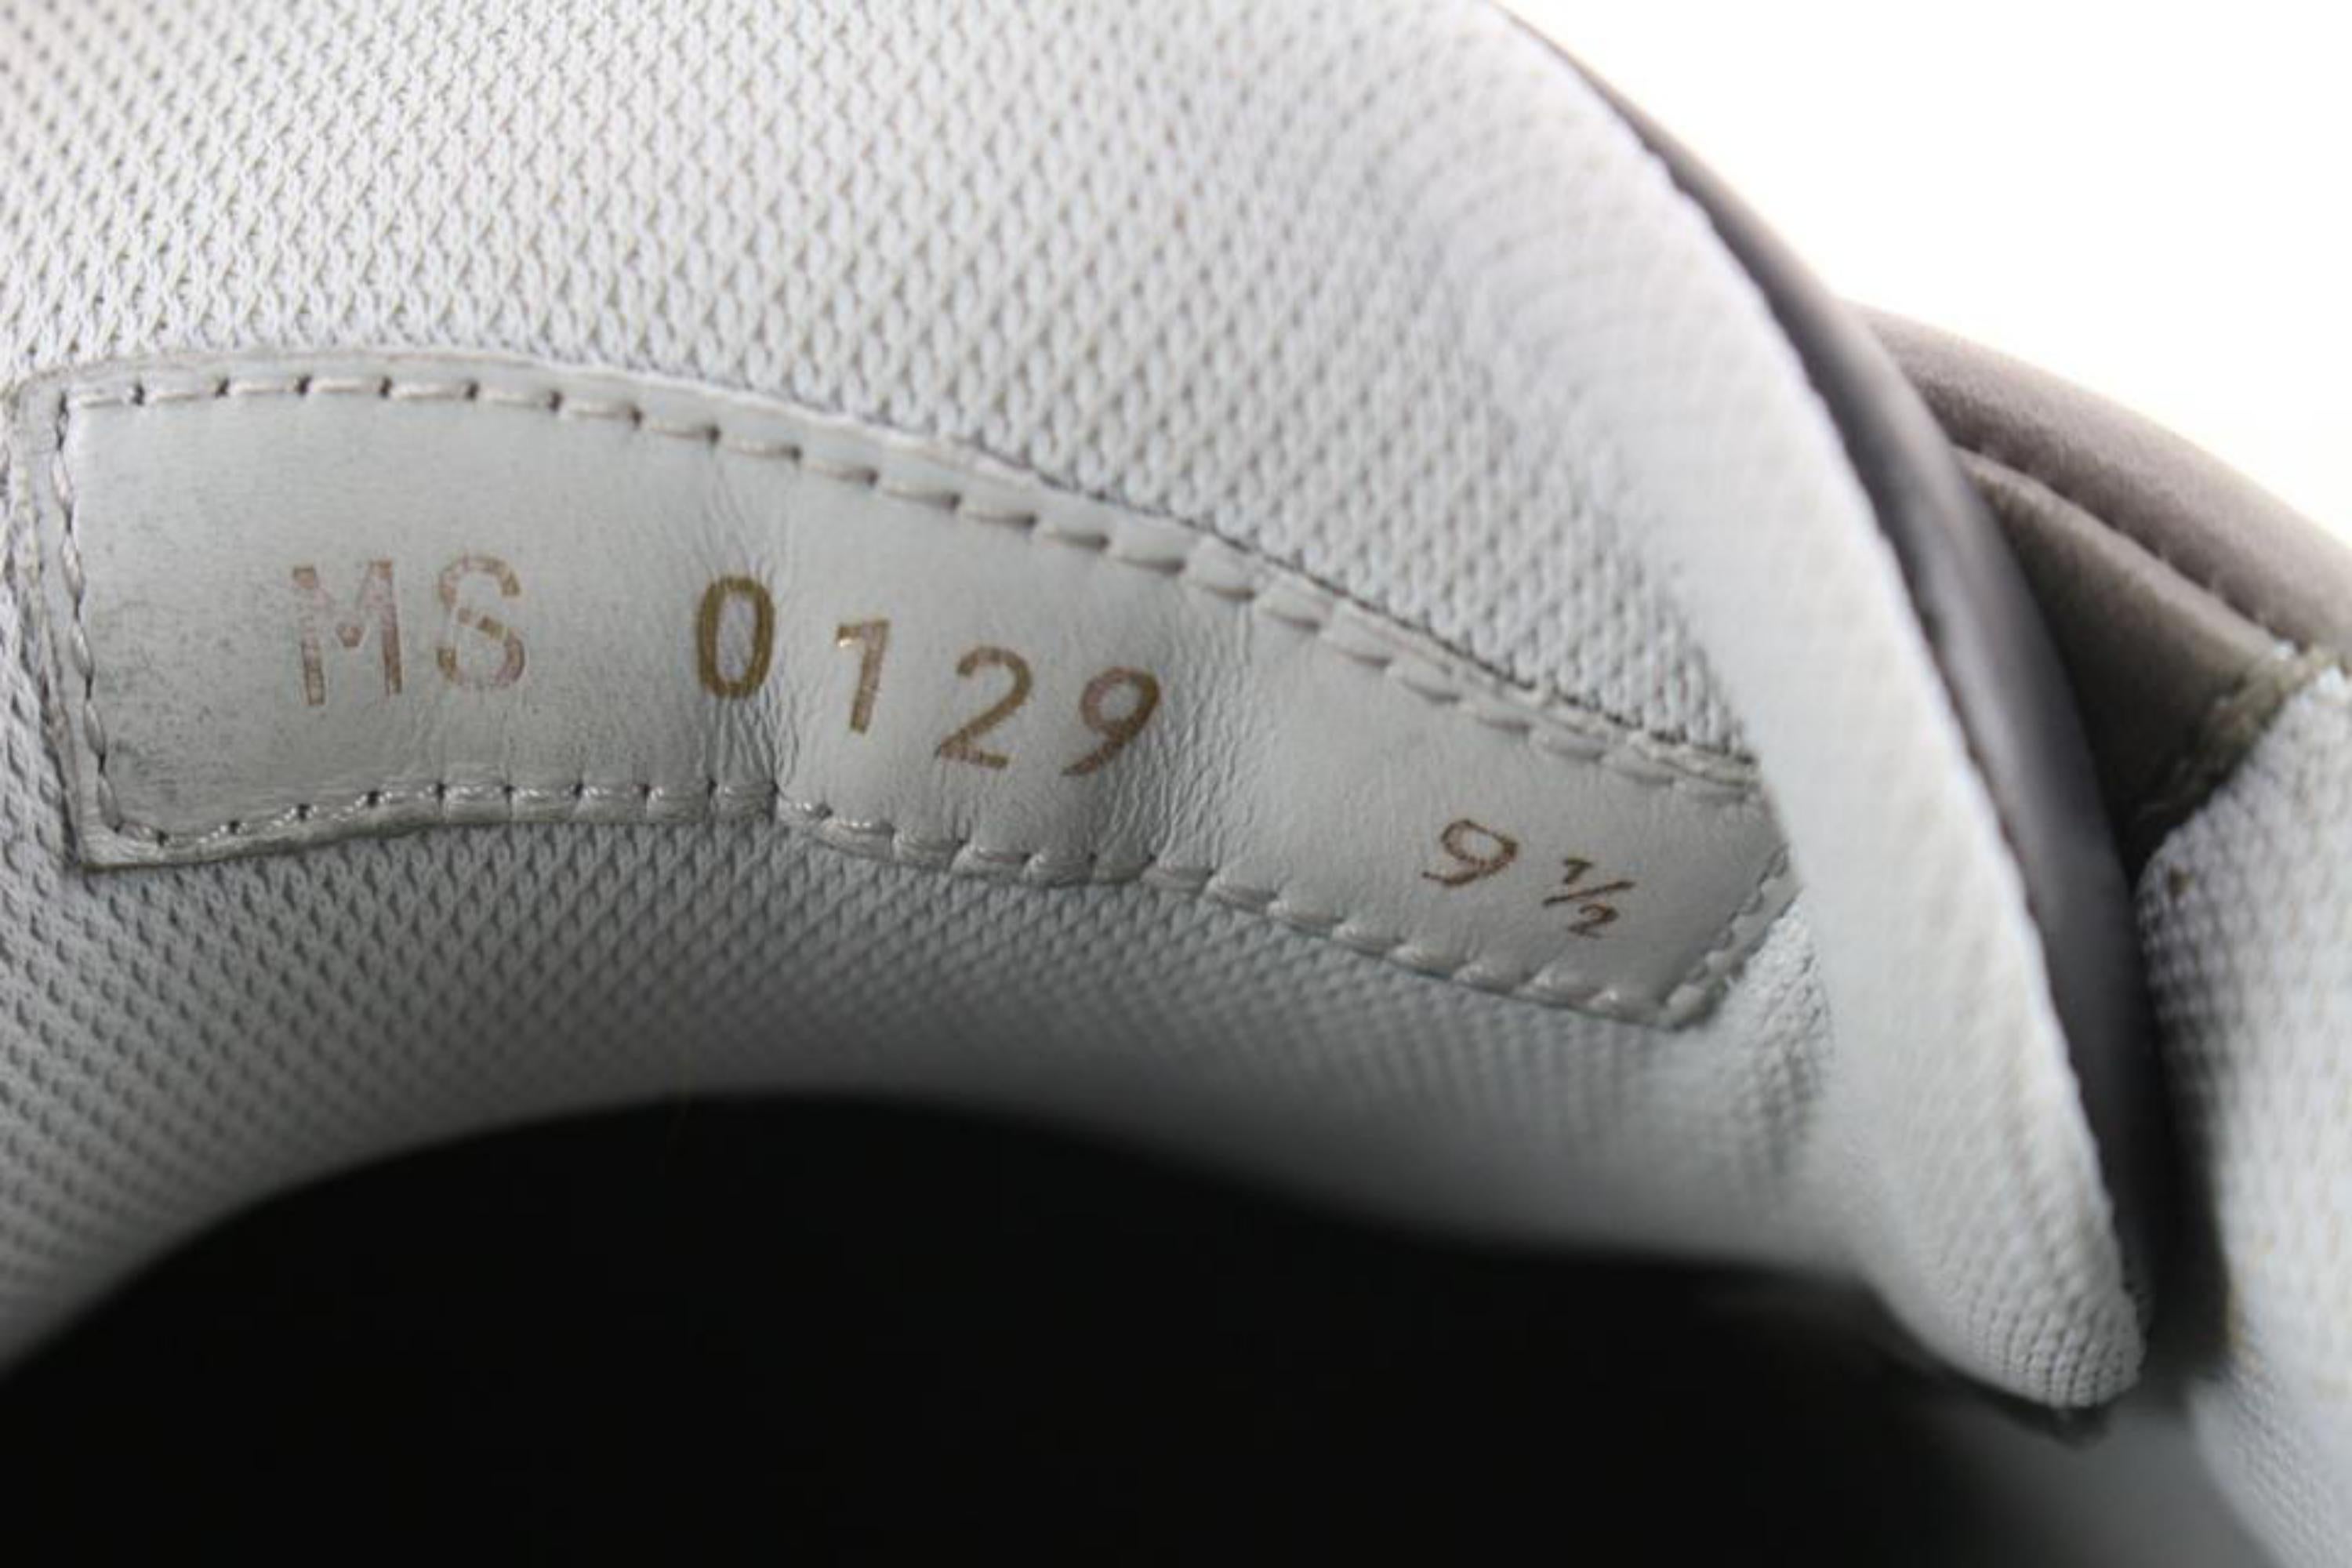 Louis Vuitton Men's 10.5 US Virgil Abloh Trainer Sneaker Low 86lz727s 6